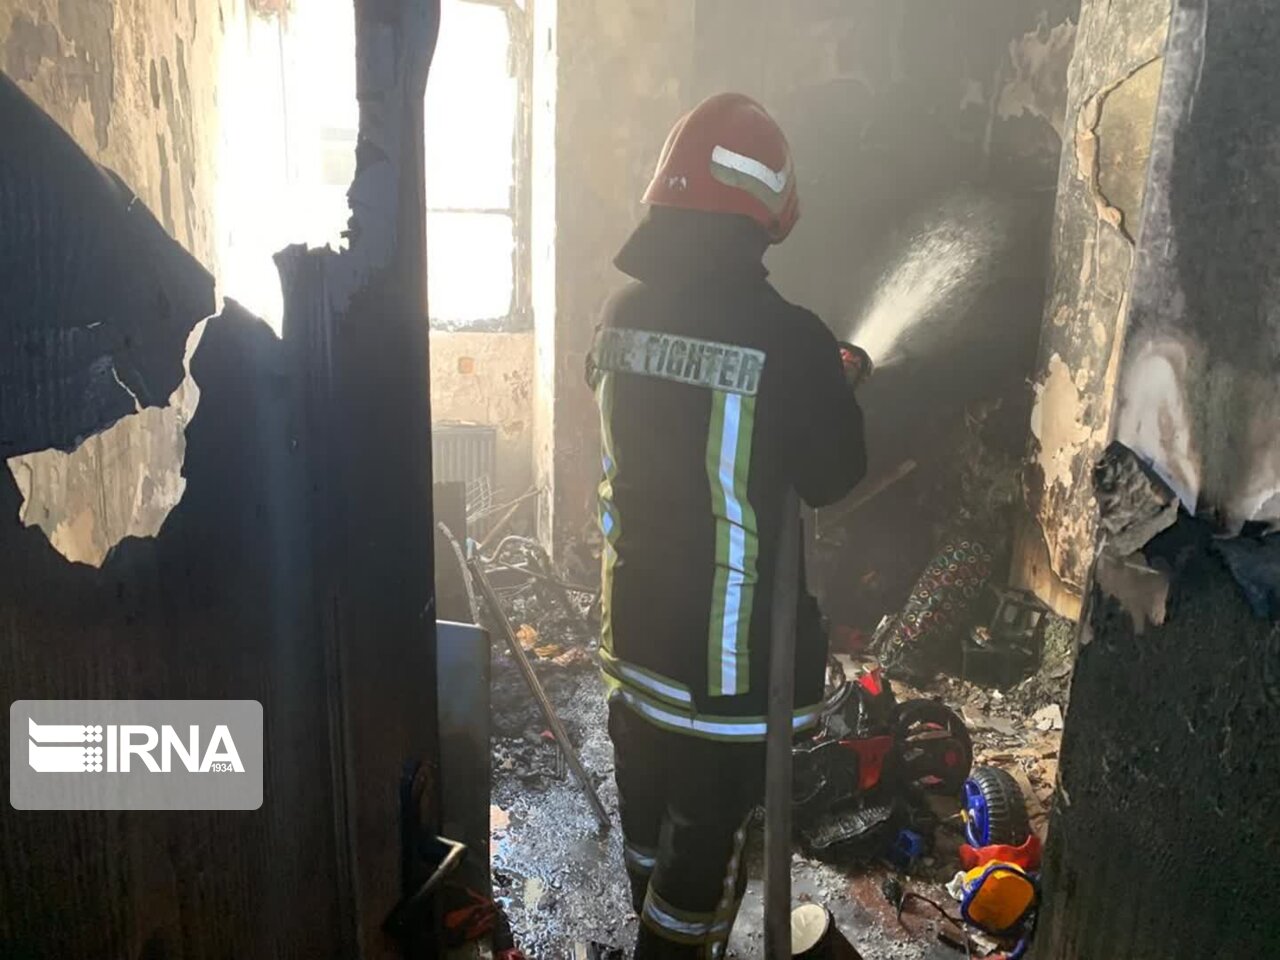 آتش نشانان کرج ۲۳ شهروند حادثه دیده را نجات دادند